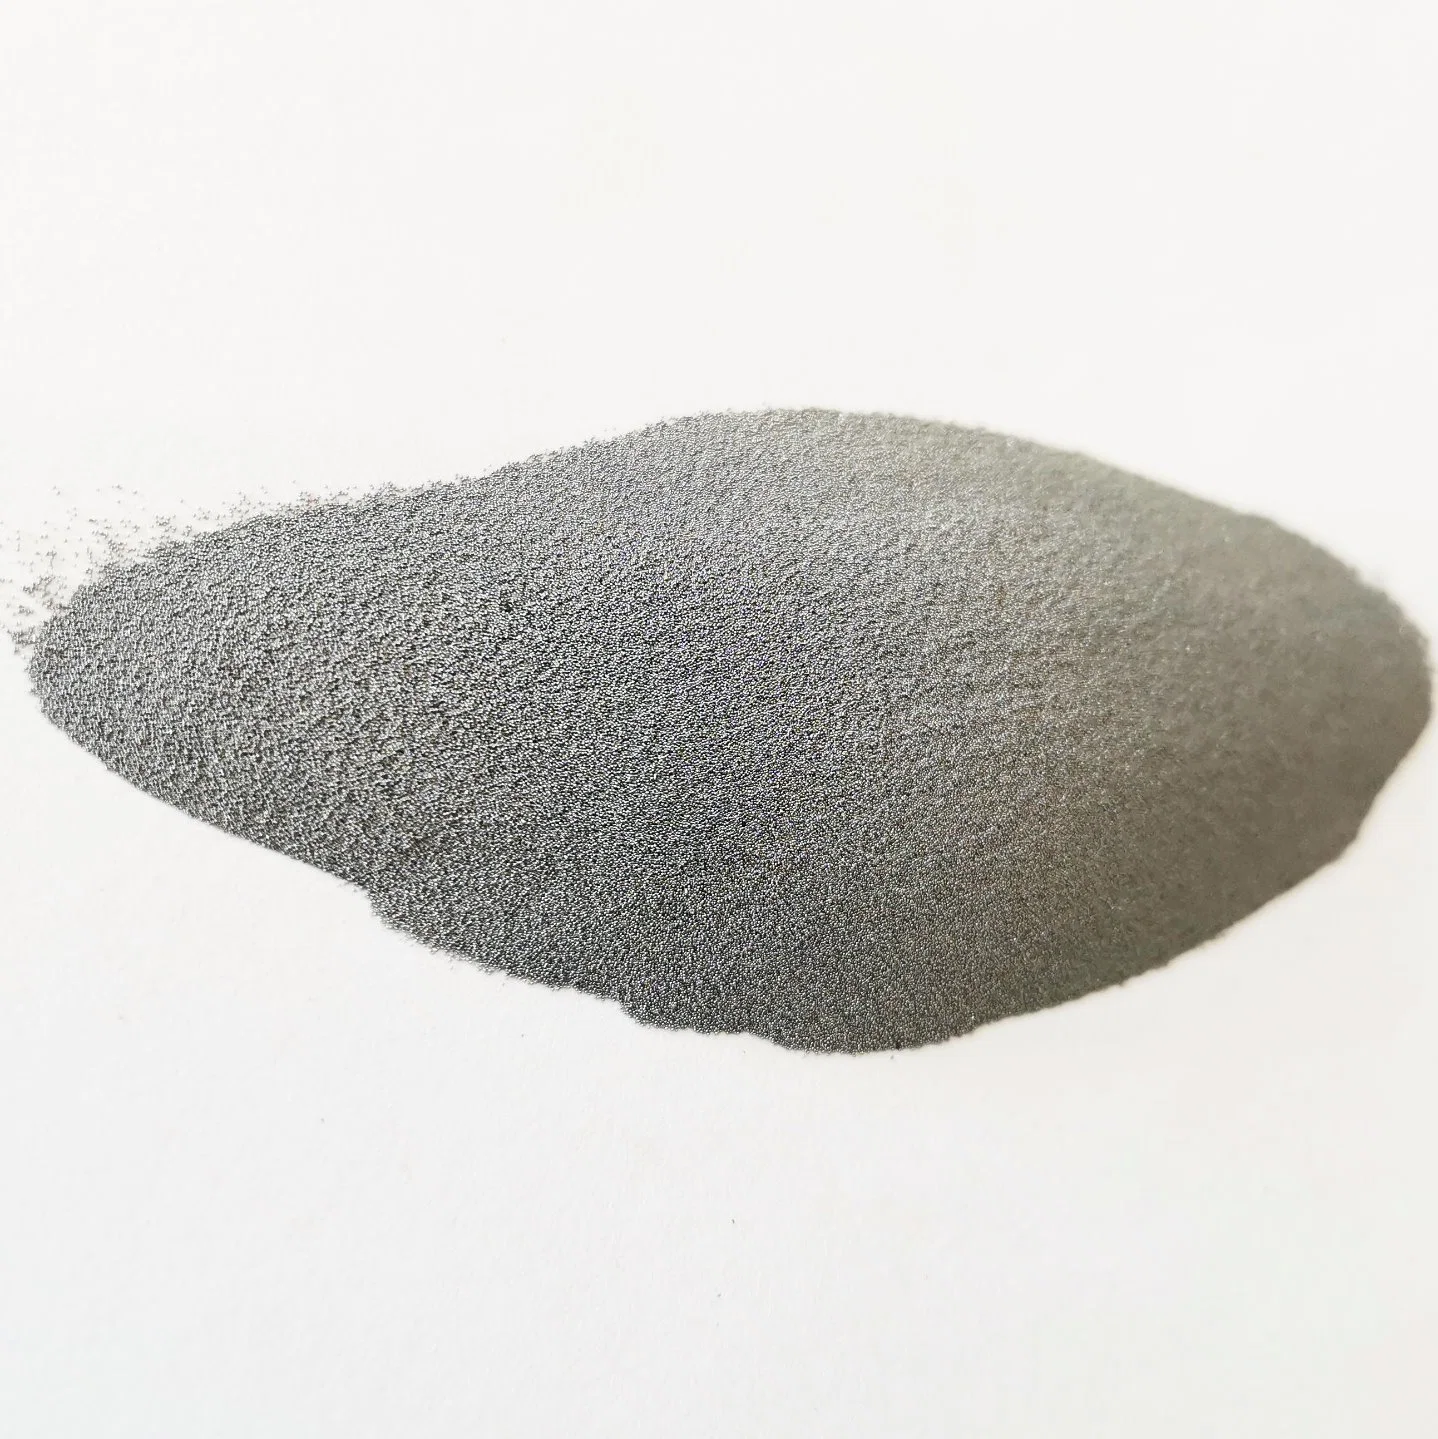 Spherical 3D Printing Tantalum Metal Powder for Medical